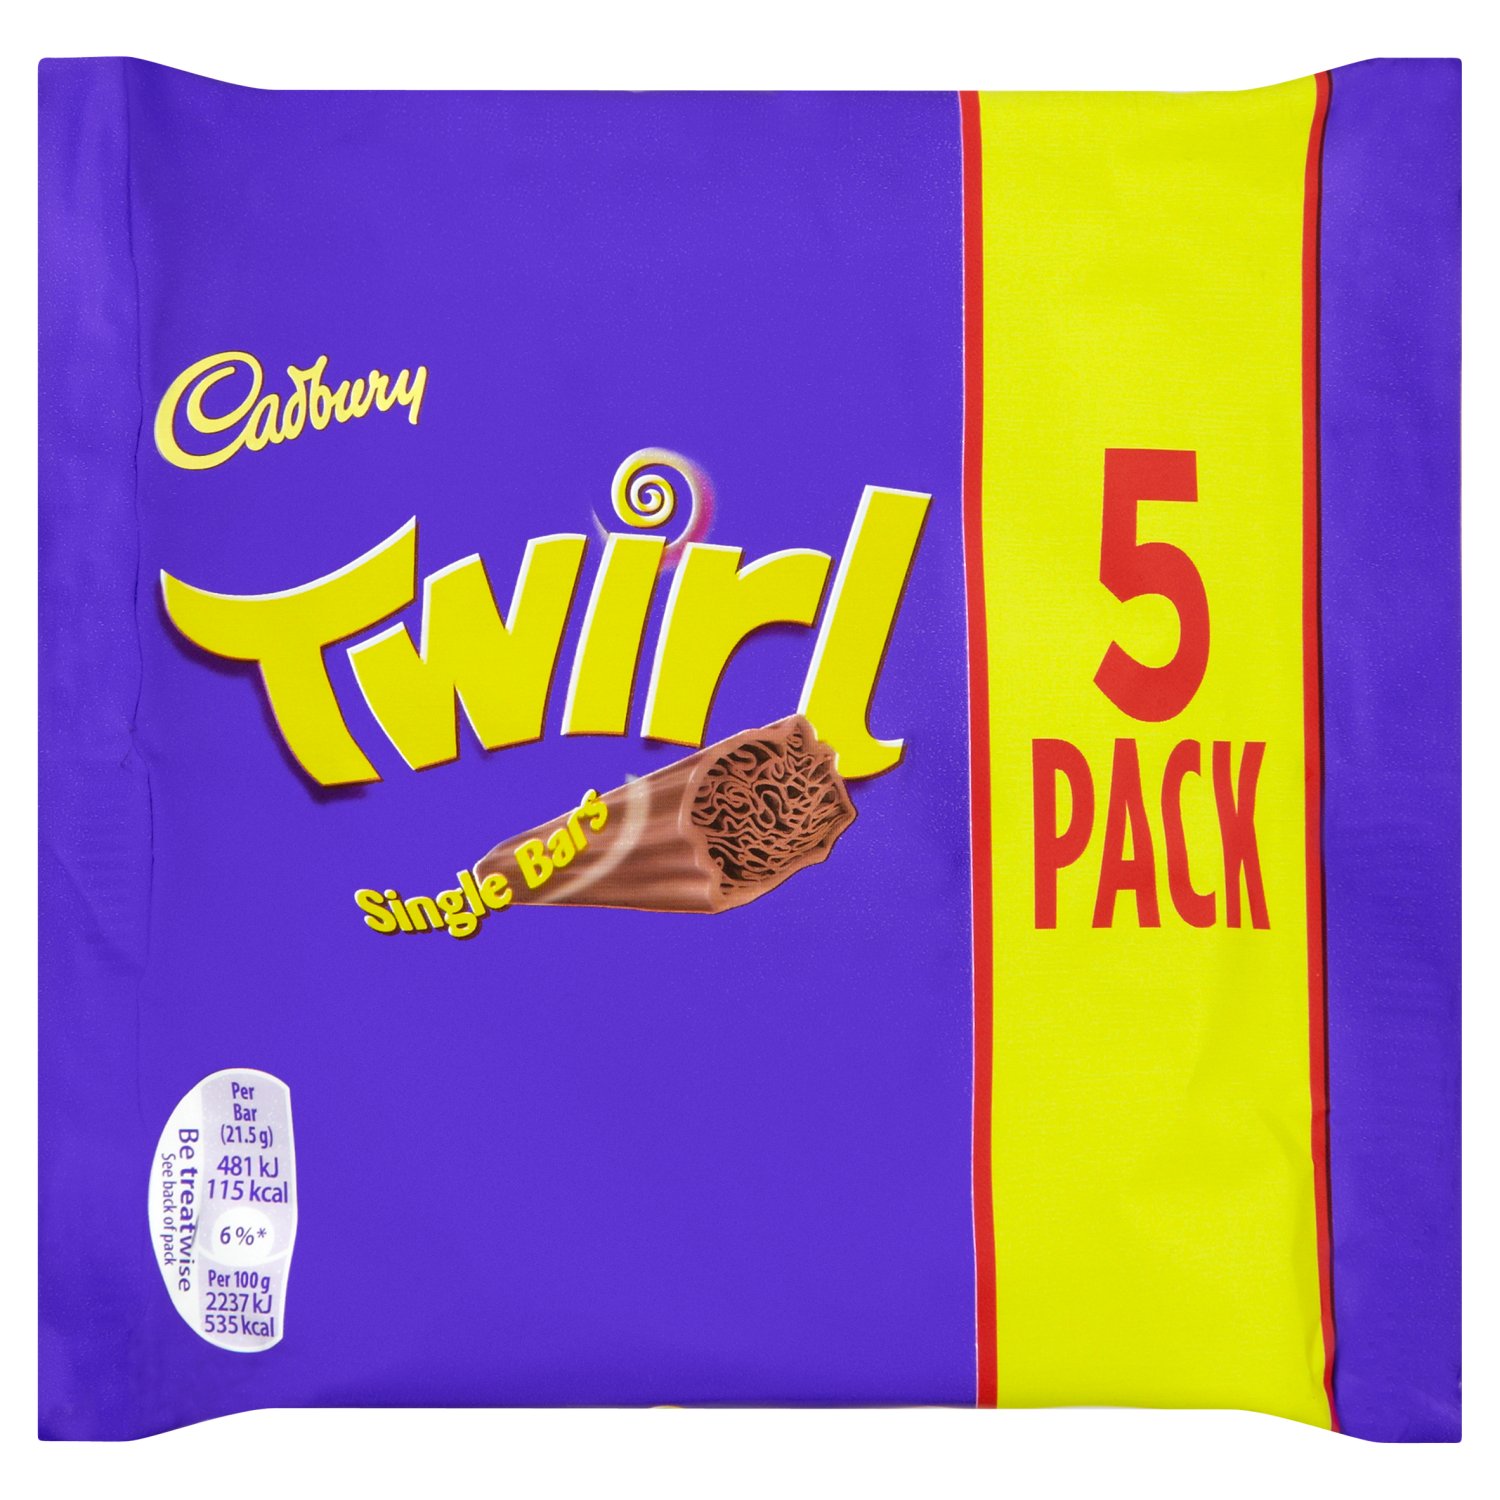 Cadbury Twirl Chocolate Bars 5 Pack  (21.5 g)